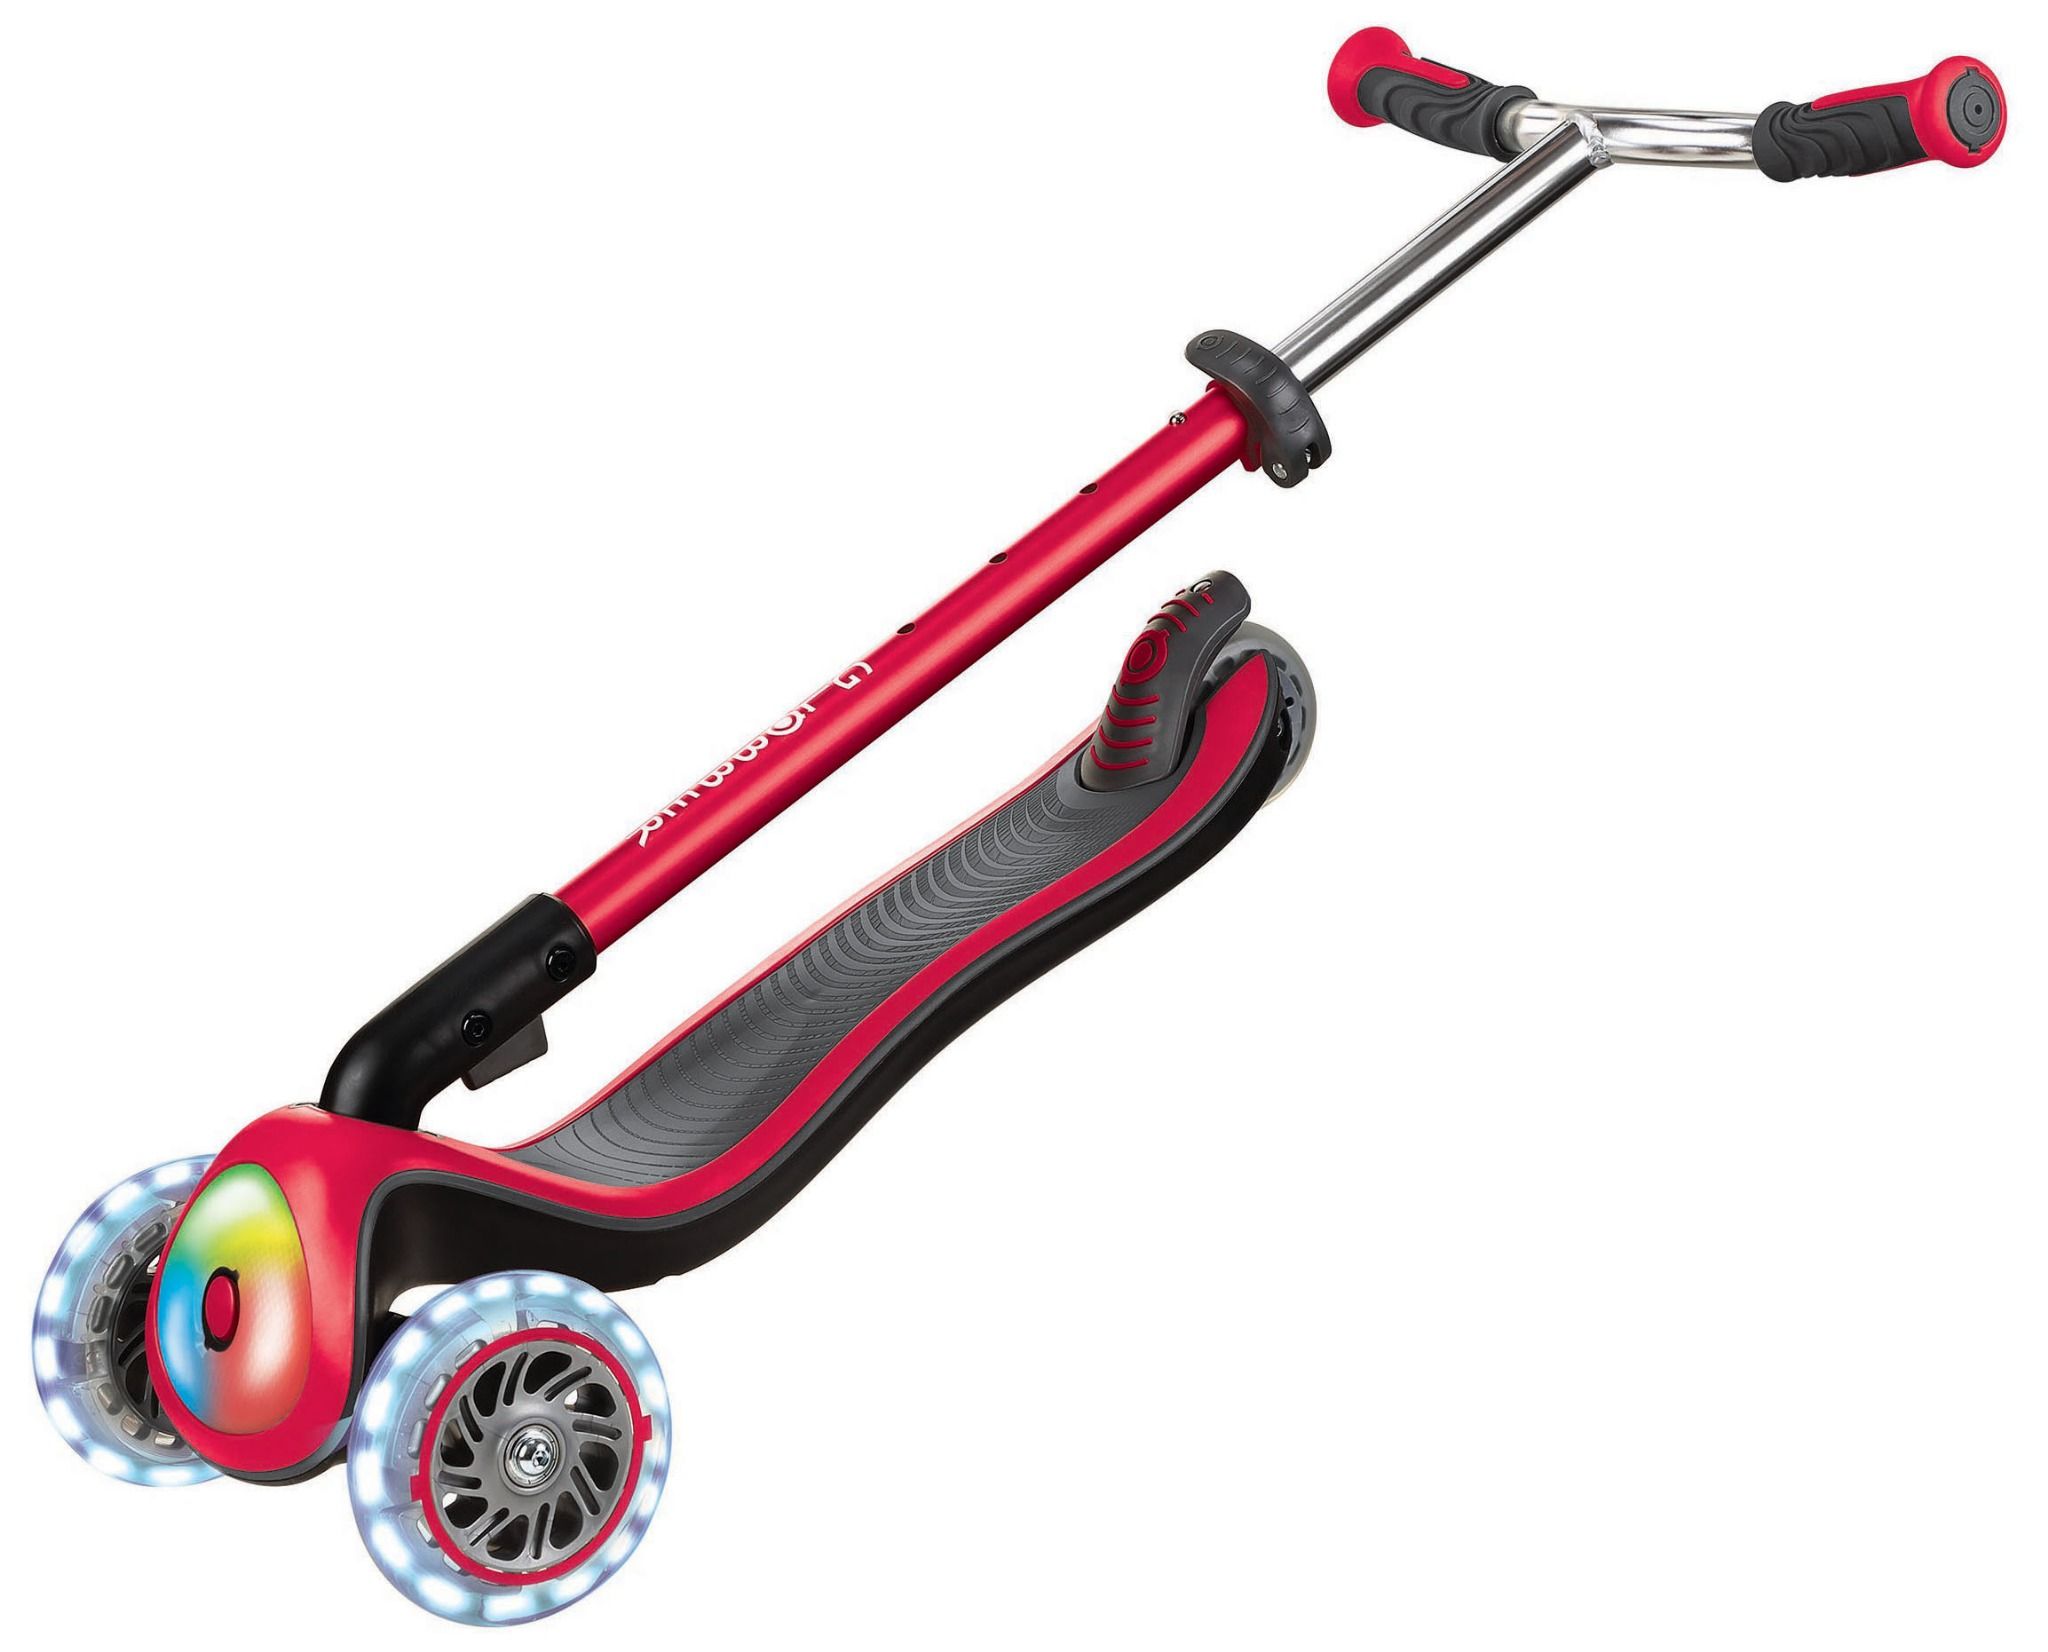  Xe trượt scooter 3 bánh gấp gọn có bánh xe và mặt trước phát sáng GLOBBER ELITE PRIME cho trẻ em từ 3 đến 9 tuổi 